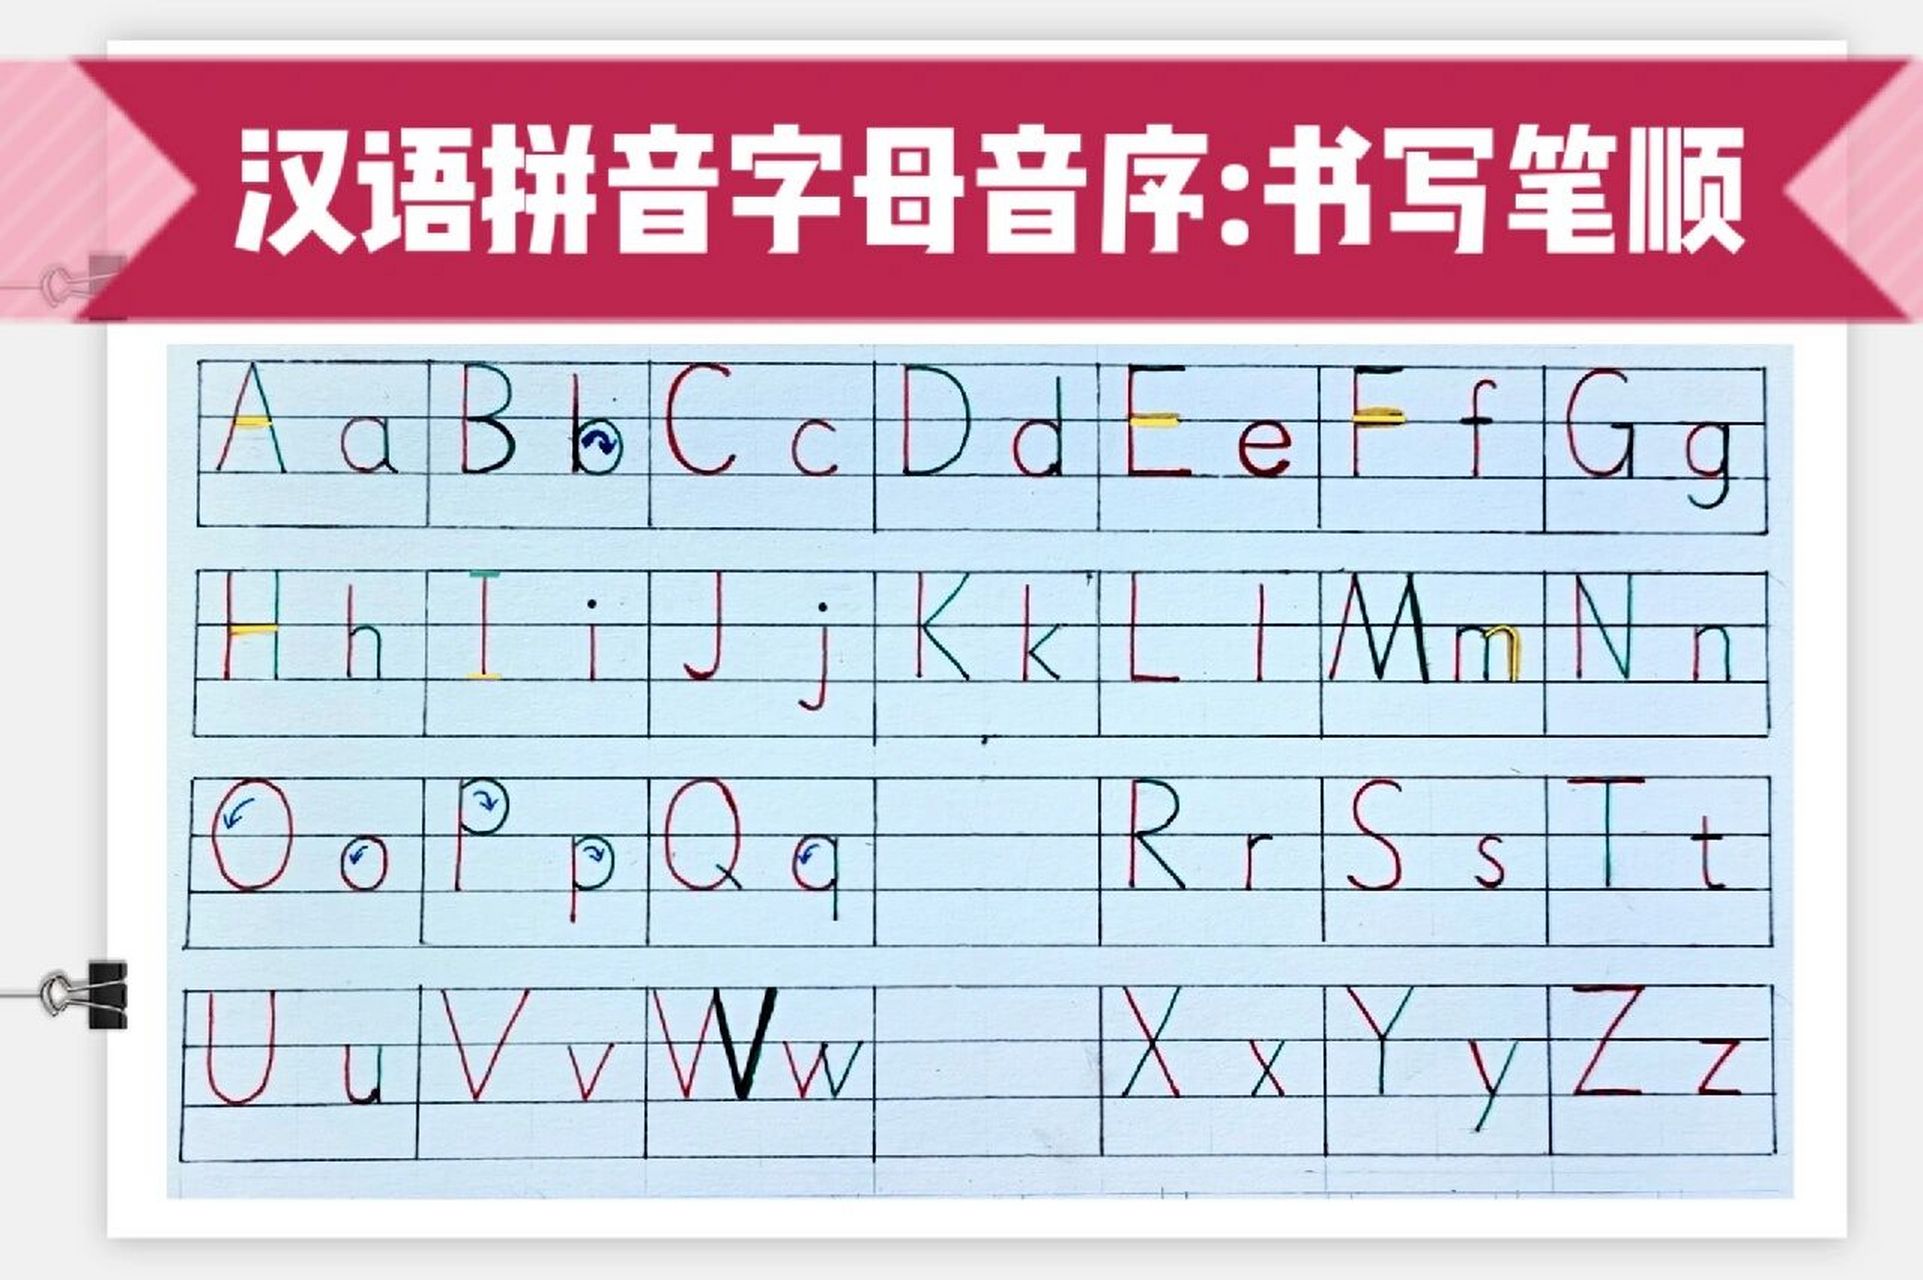 拼音字母表的书写格式图片